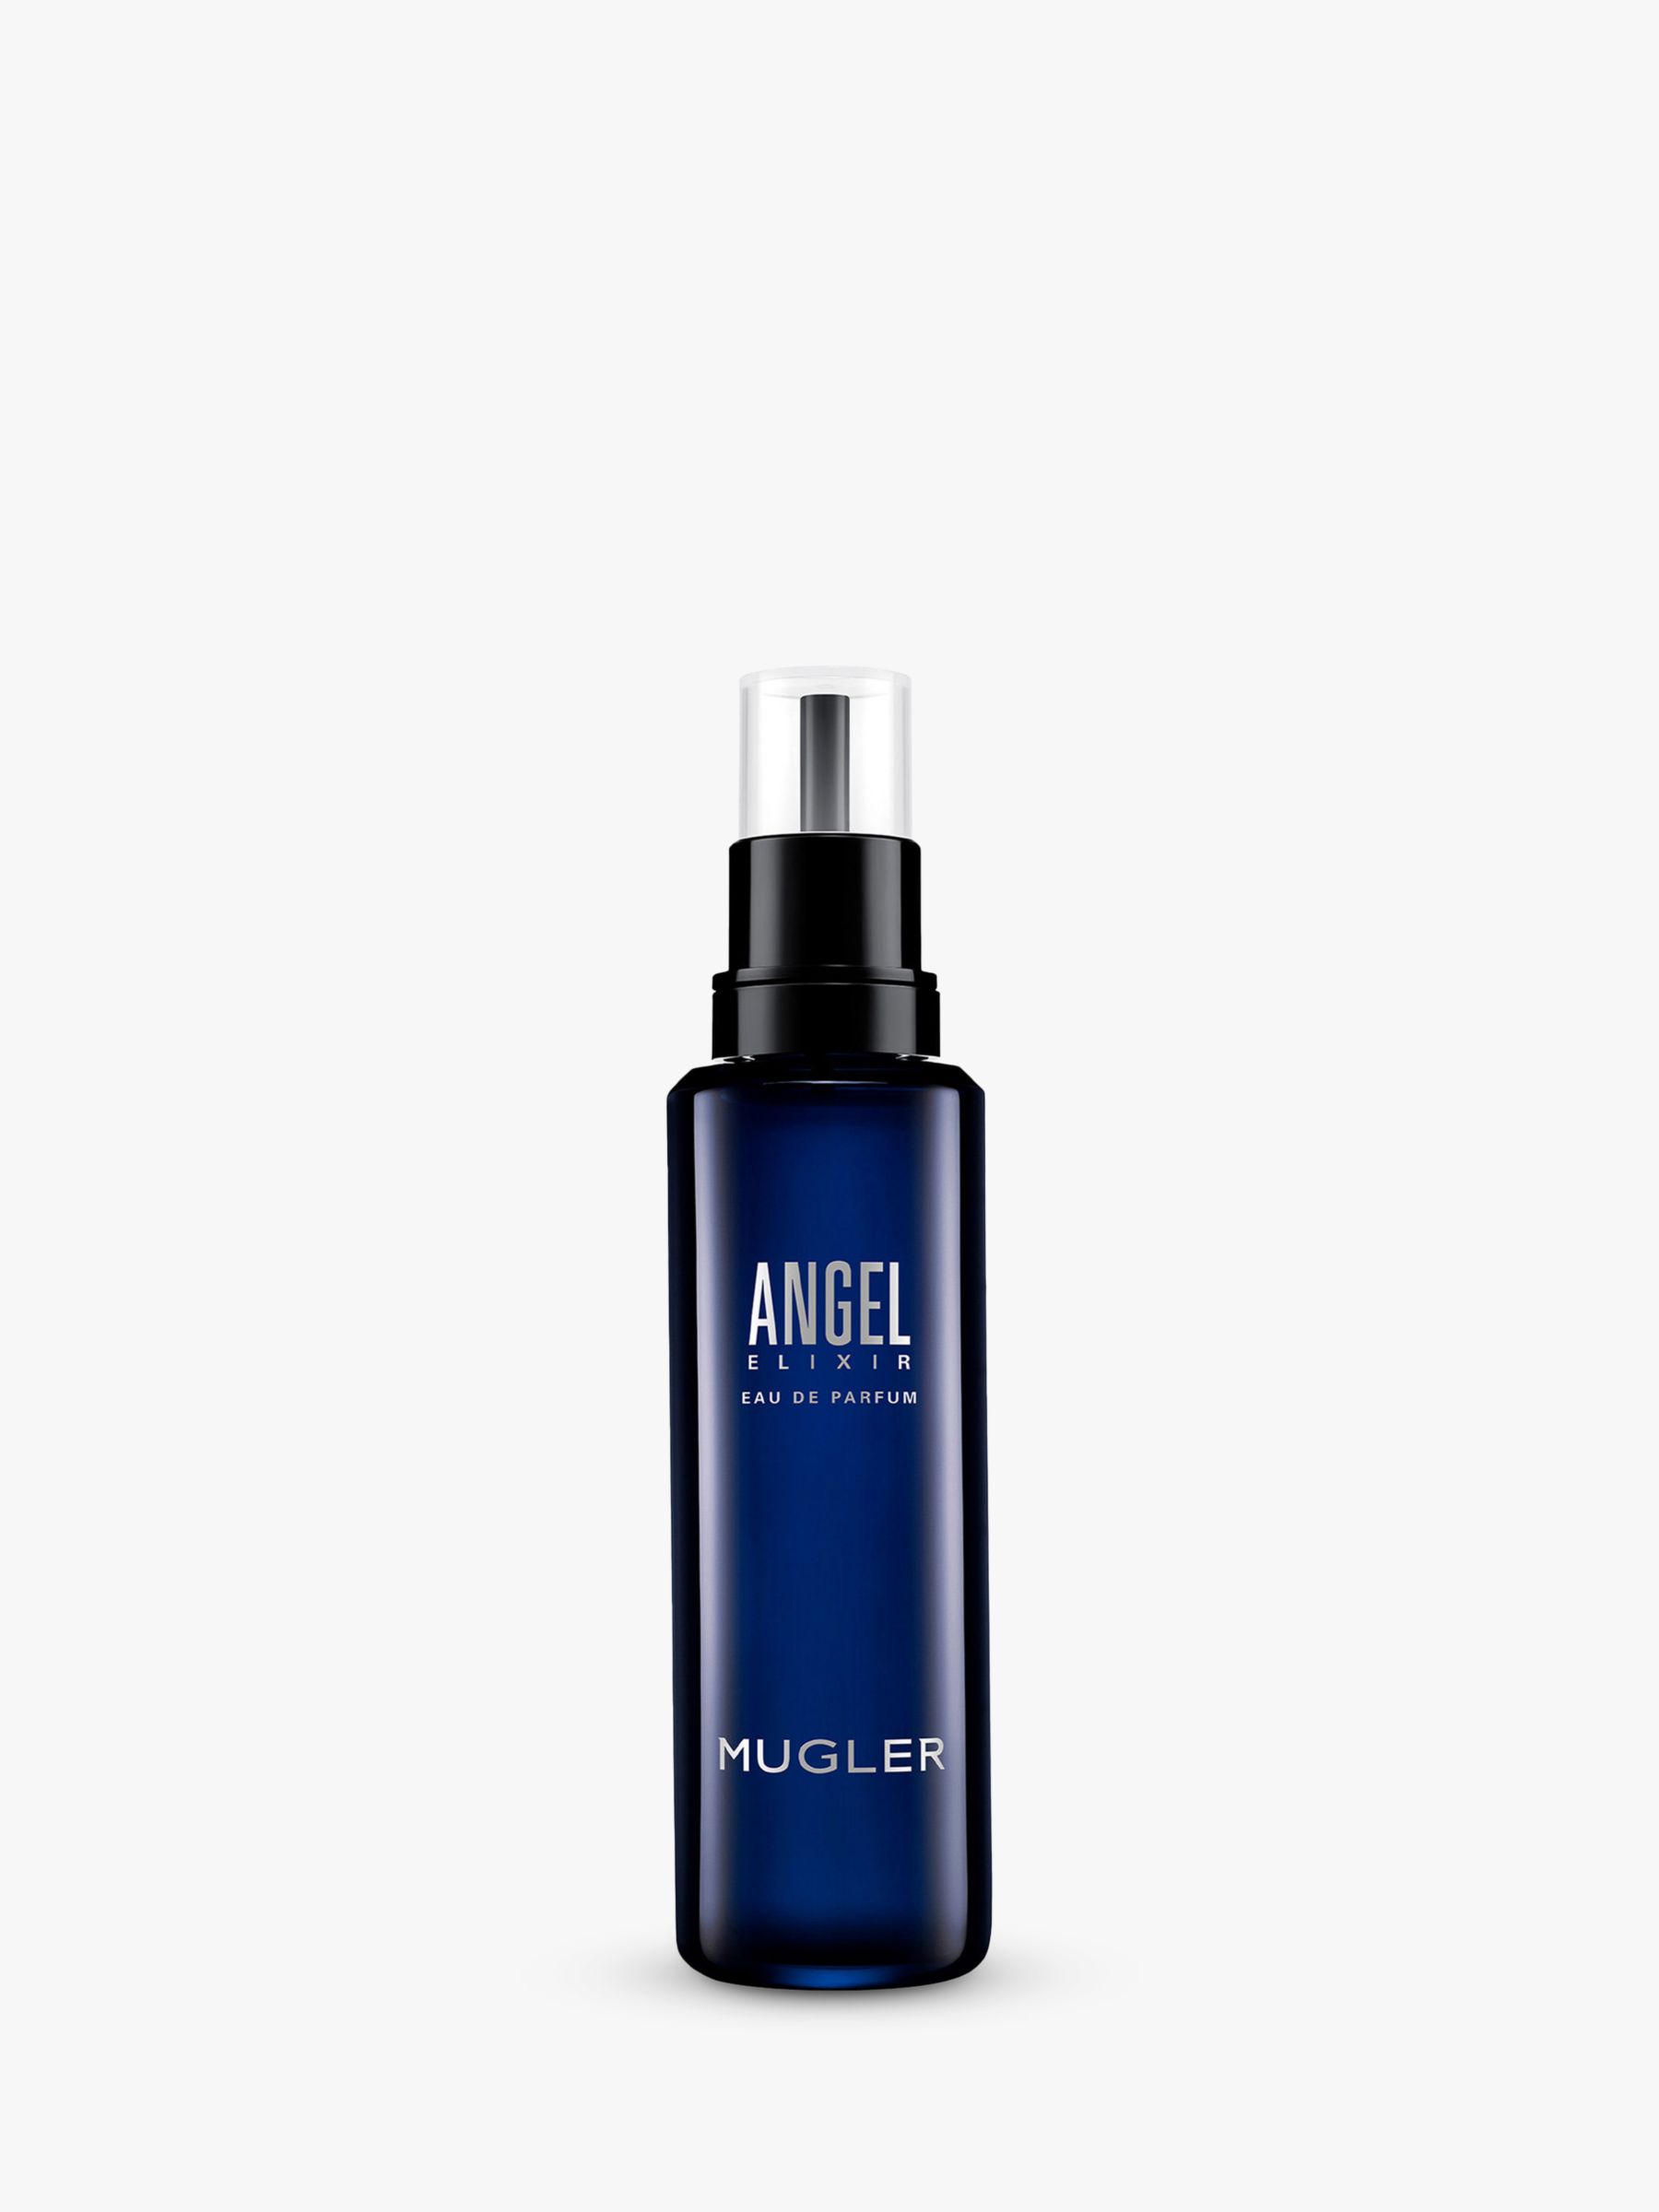 Mugler Angel Elixir Eau de Parfum Refill, 100ml 1